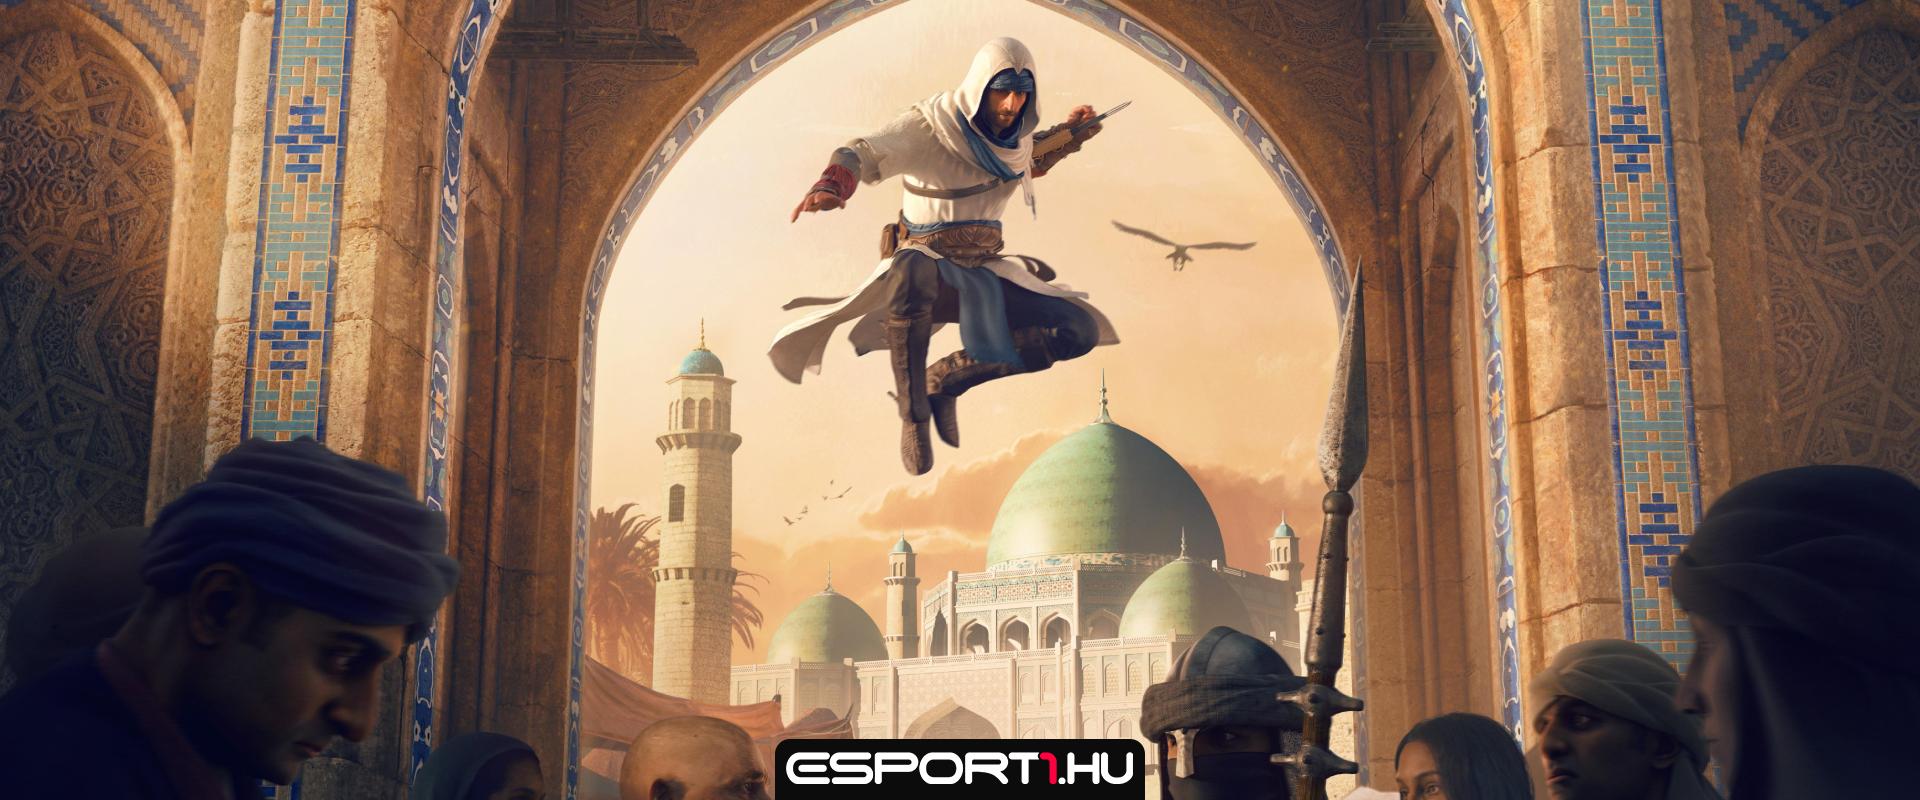 Új előzetest kapott az Assassin's Creed Mirage